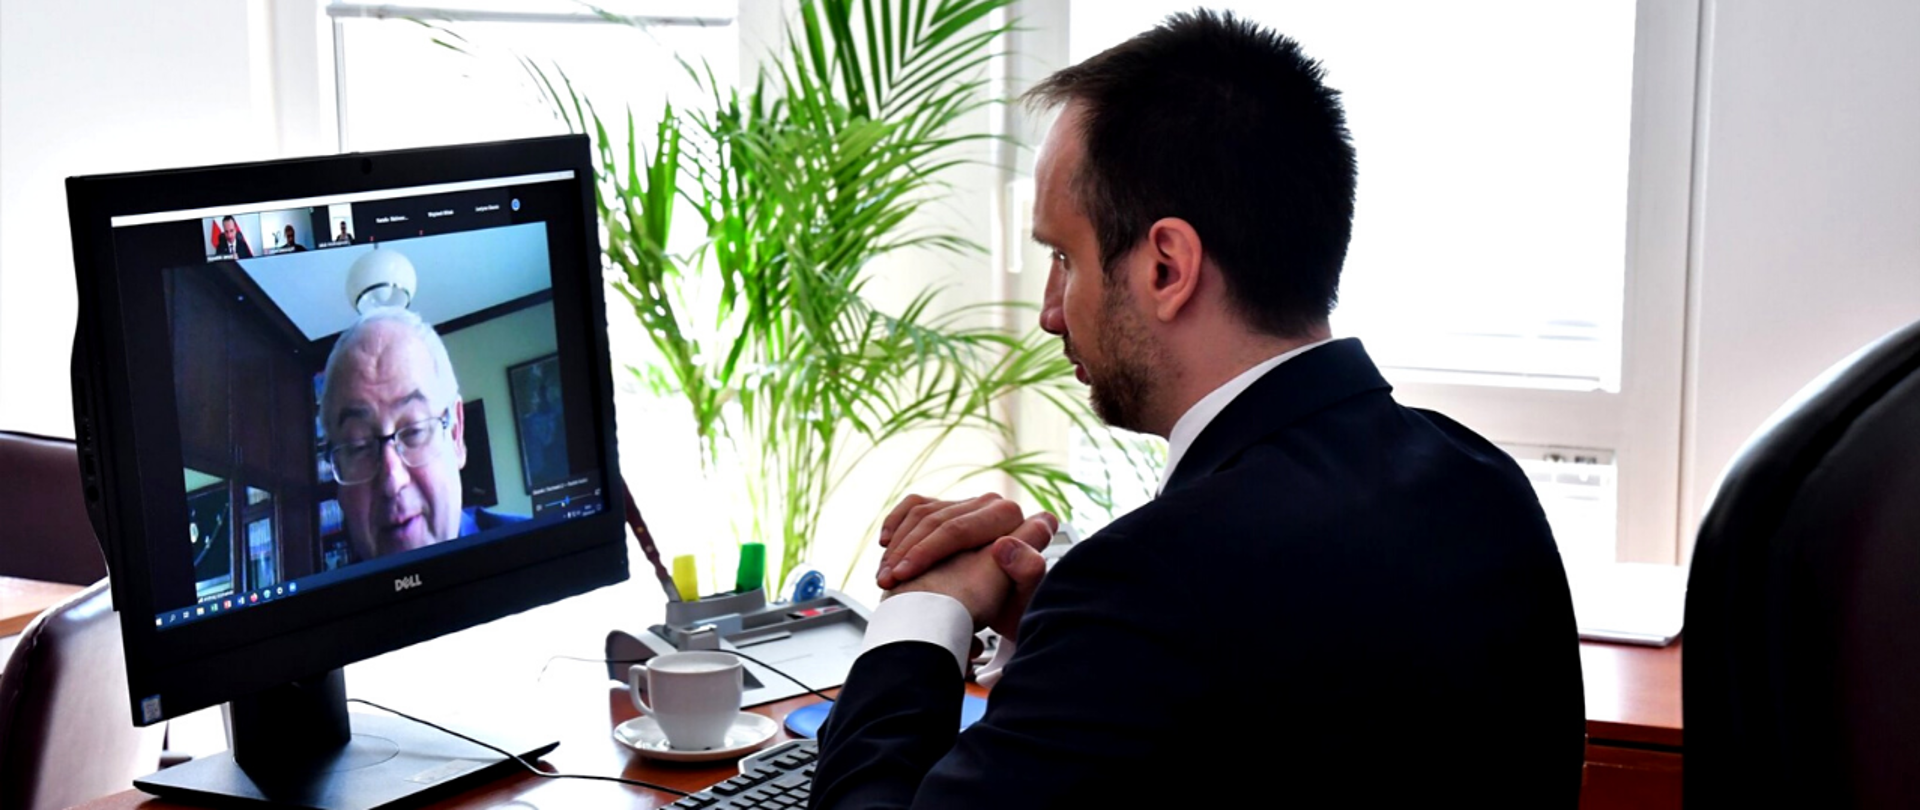 Minister Janusz Kowalski siedzi przy biurku podczas spotkania online. Na ekranie monitora wizerunek prof. Andrzeja Szumańskiego